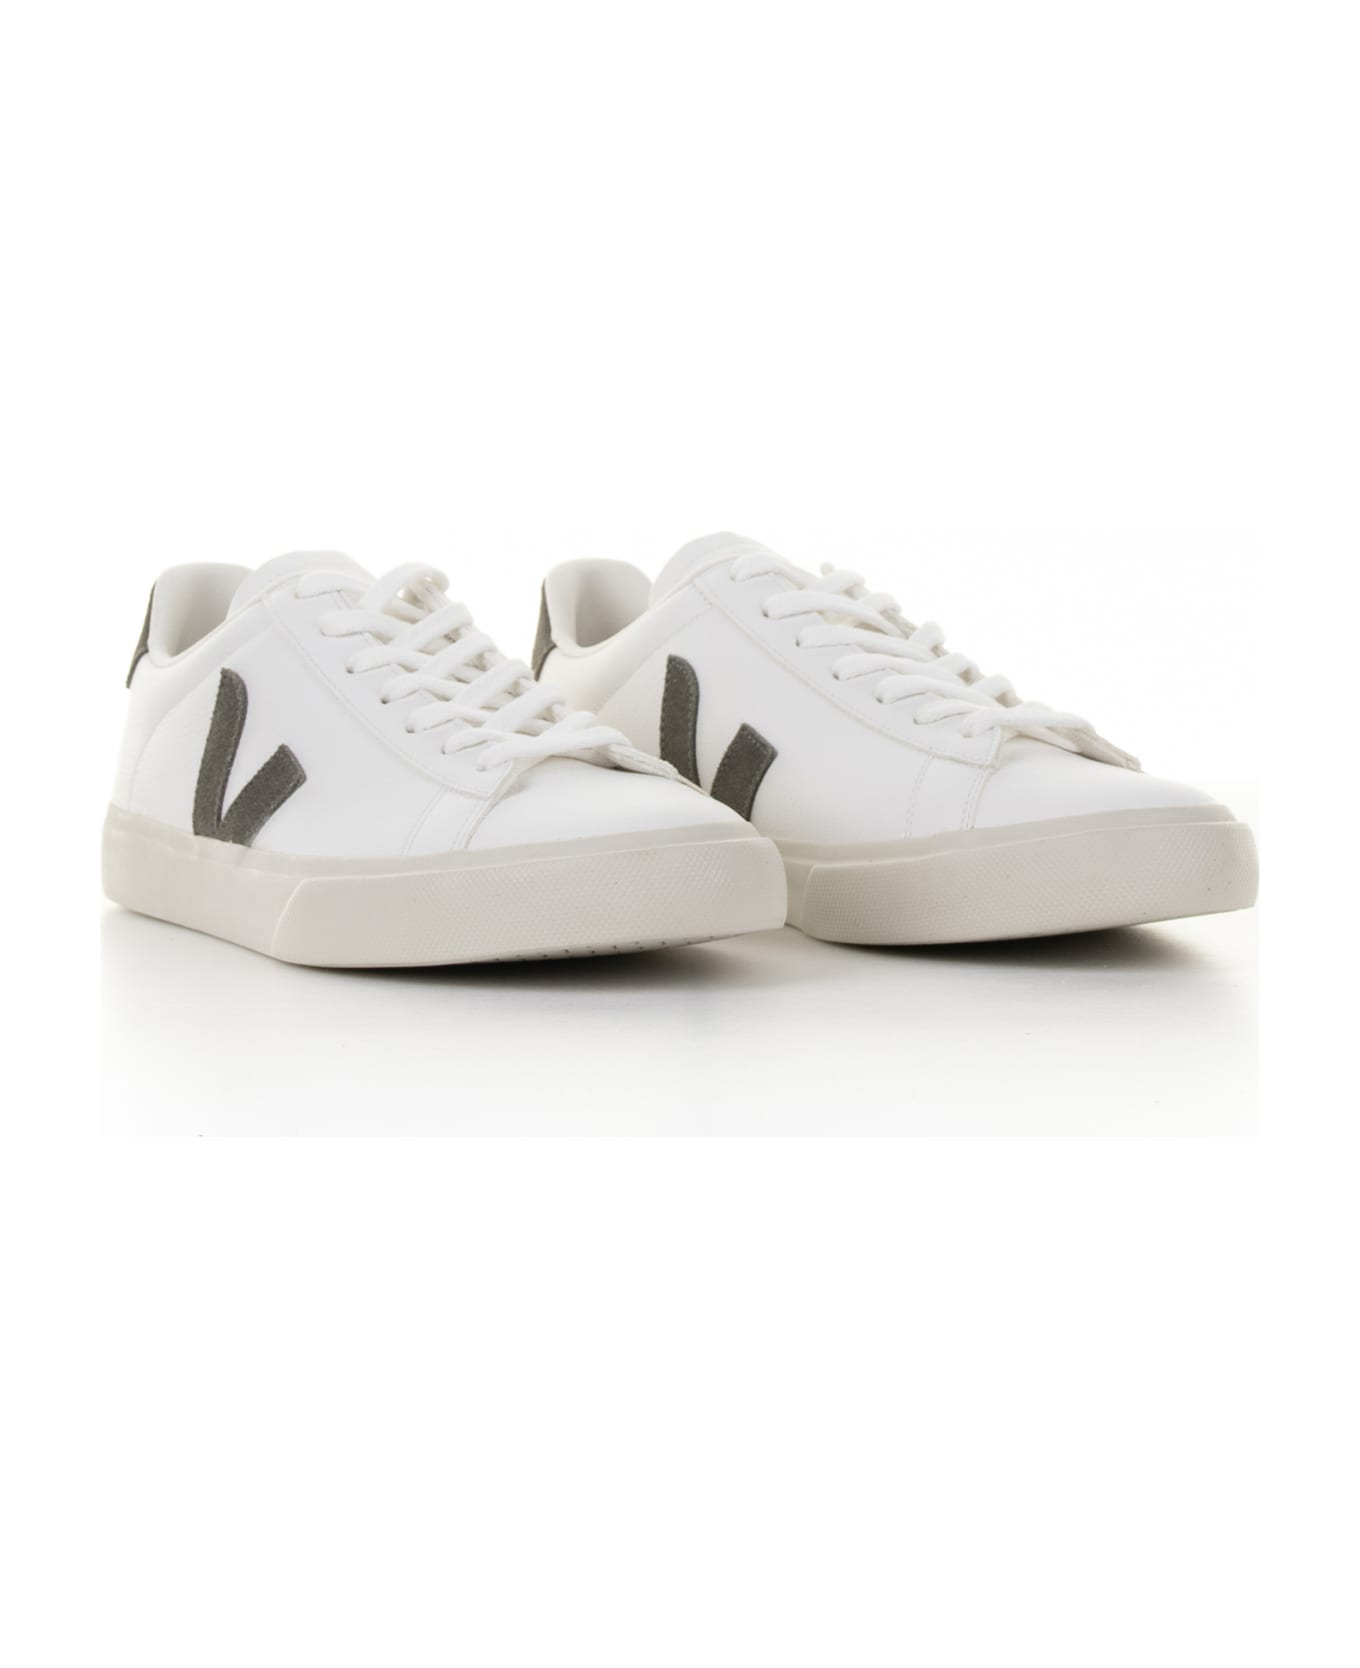 Veja Campo Sneaker In White Khaki Leather For Men スニーカー